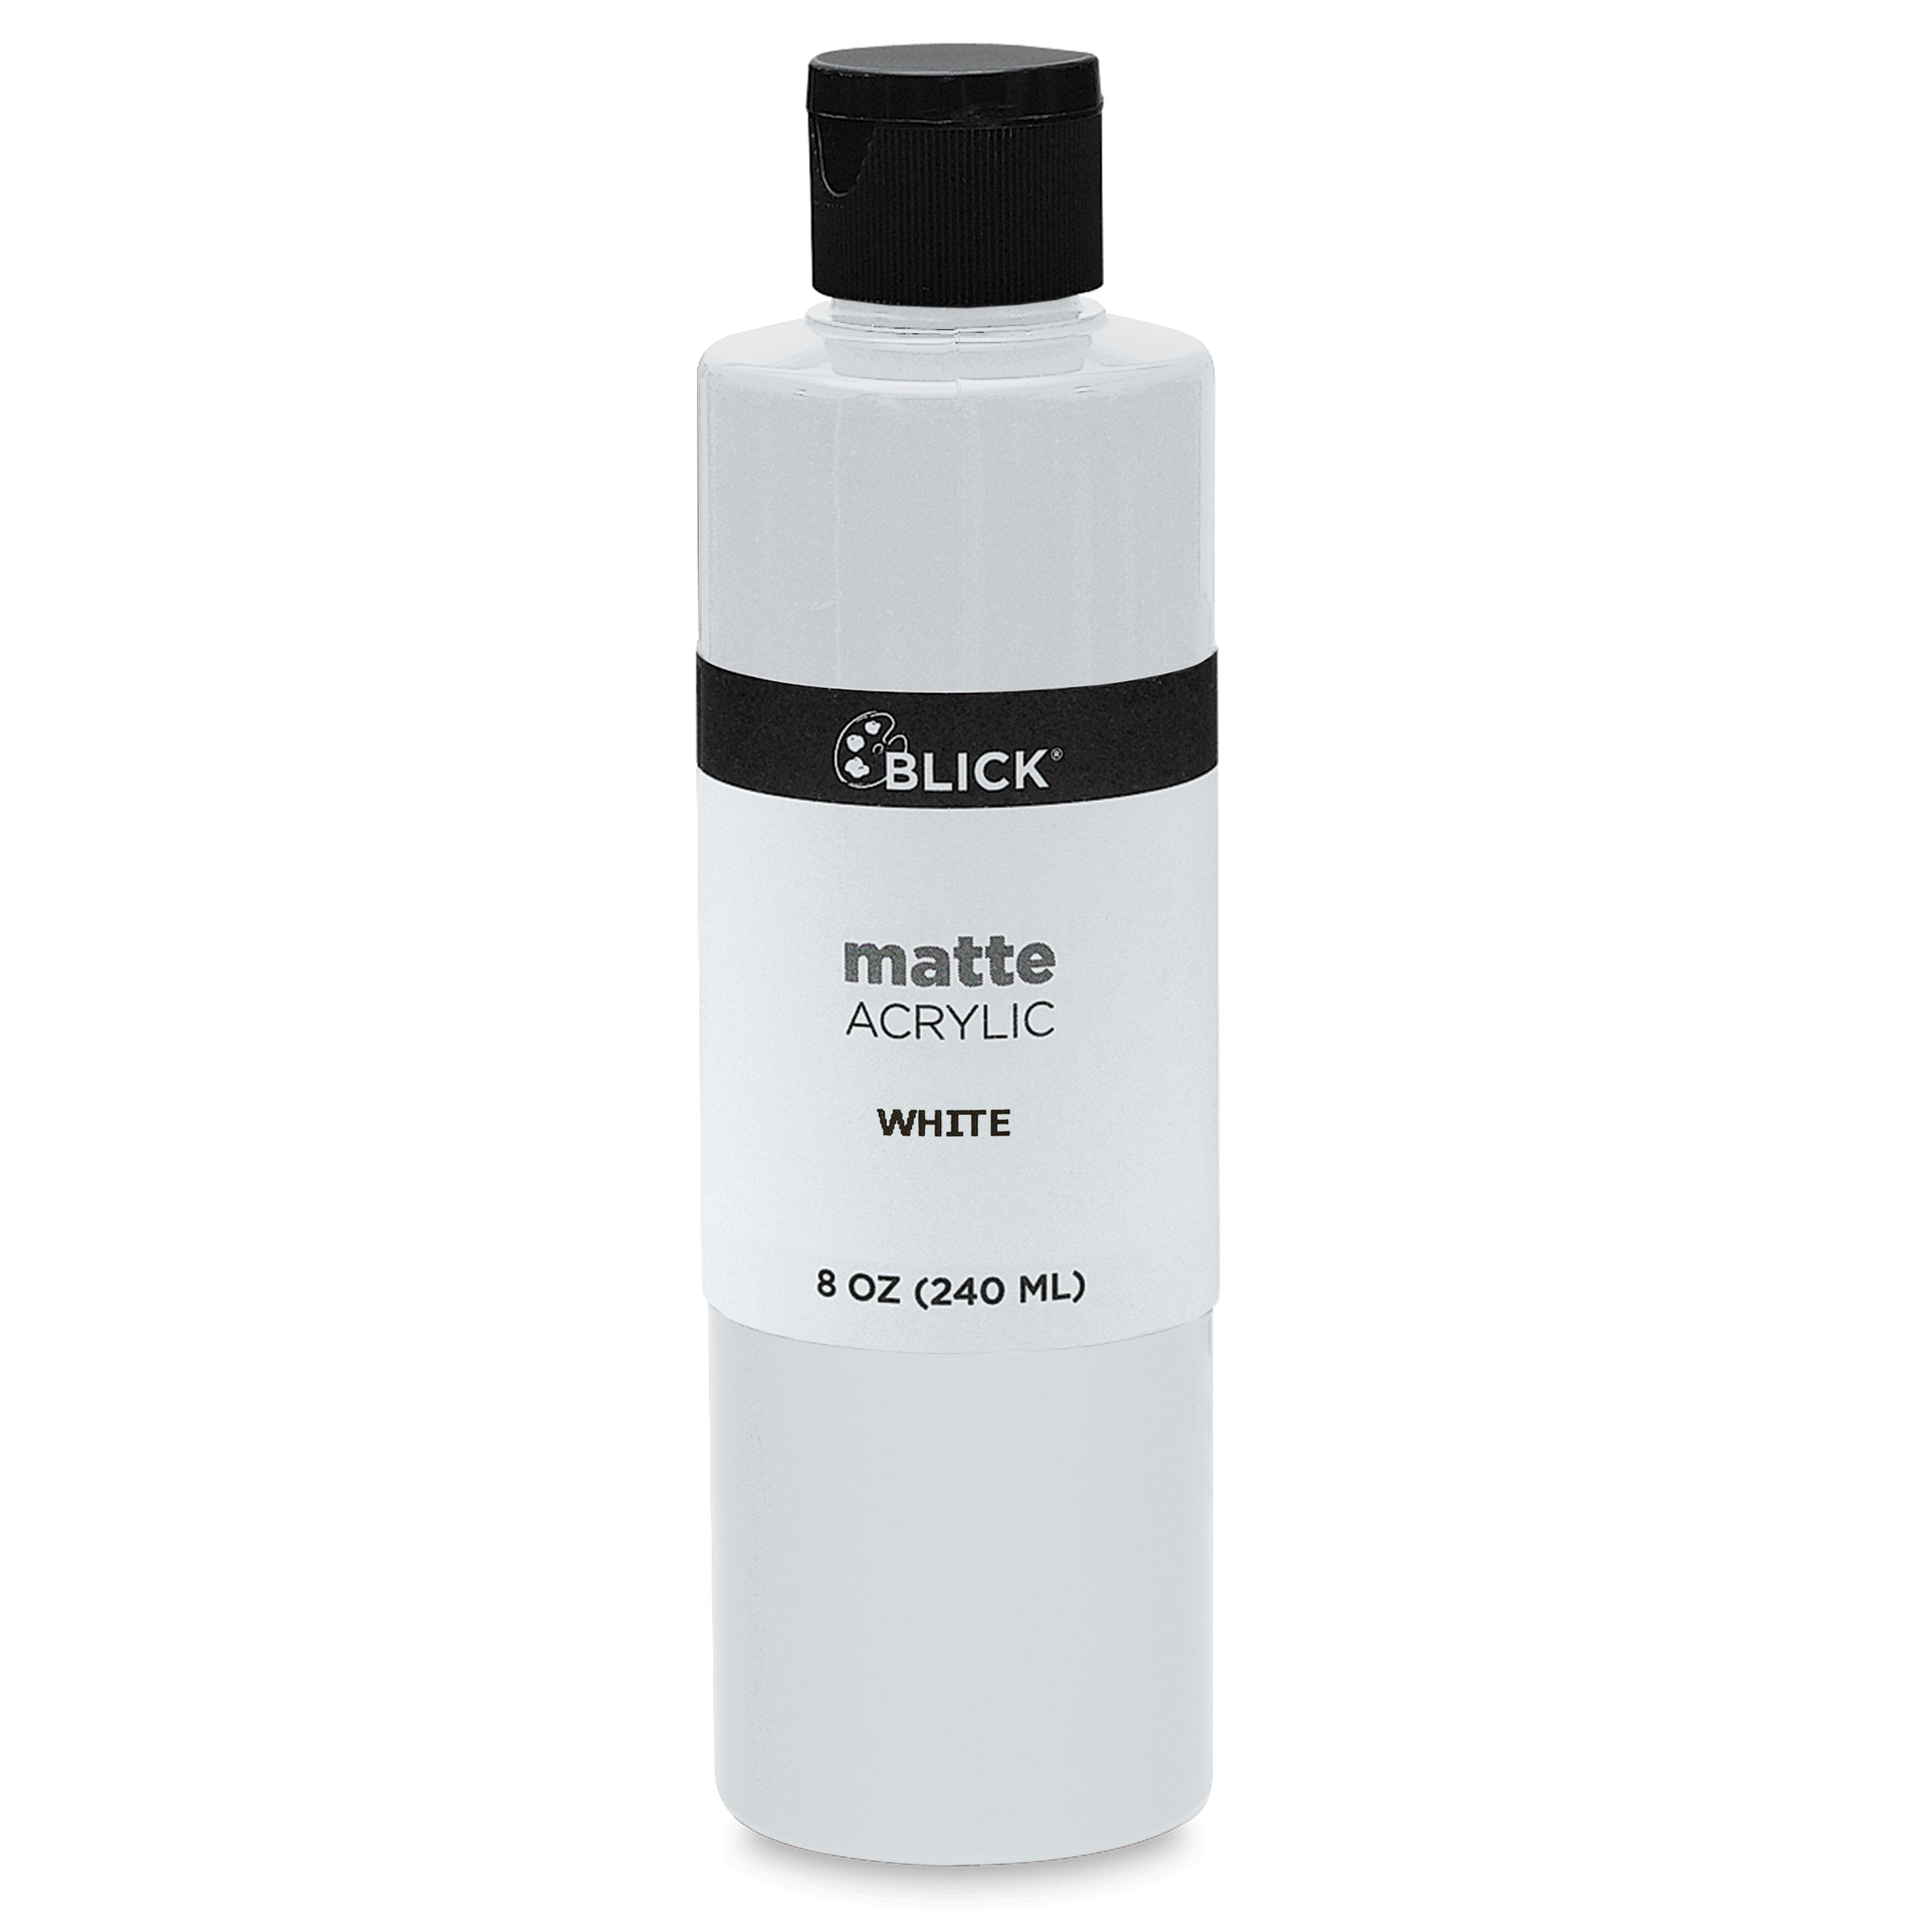 Blick Matte Acrylic - Blue Light, 2 oz bottle